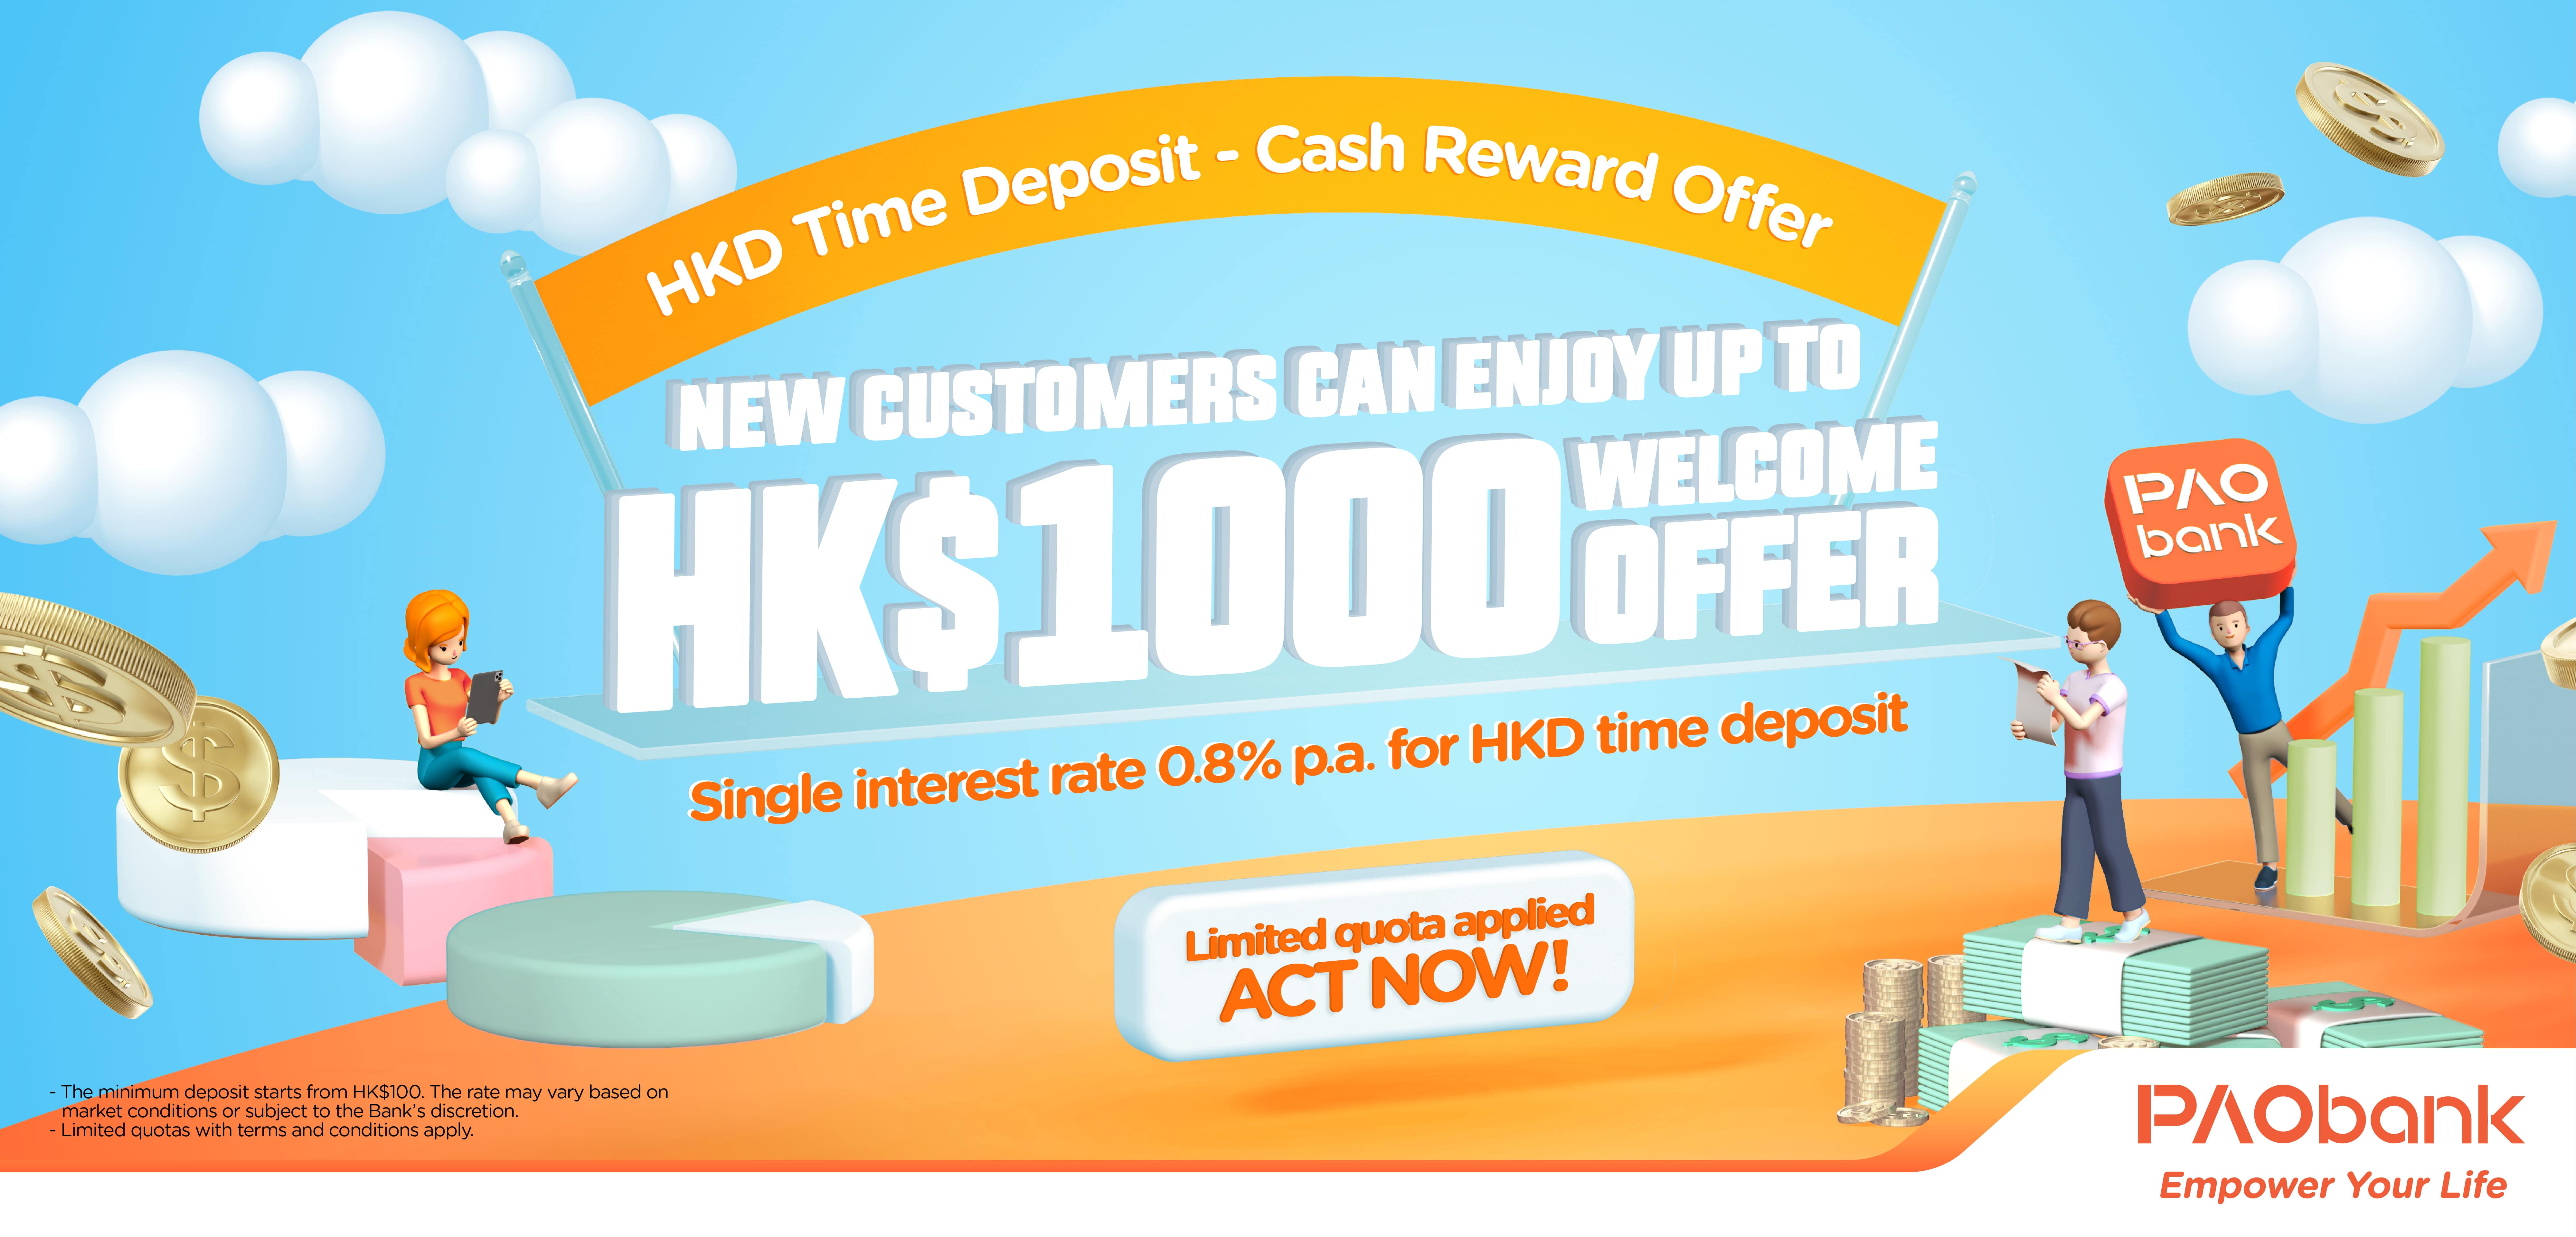 PAOB Time Deposit Cash Reward Offer